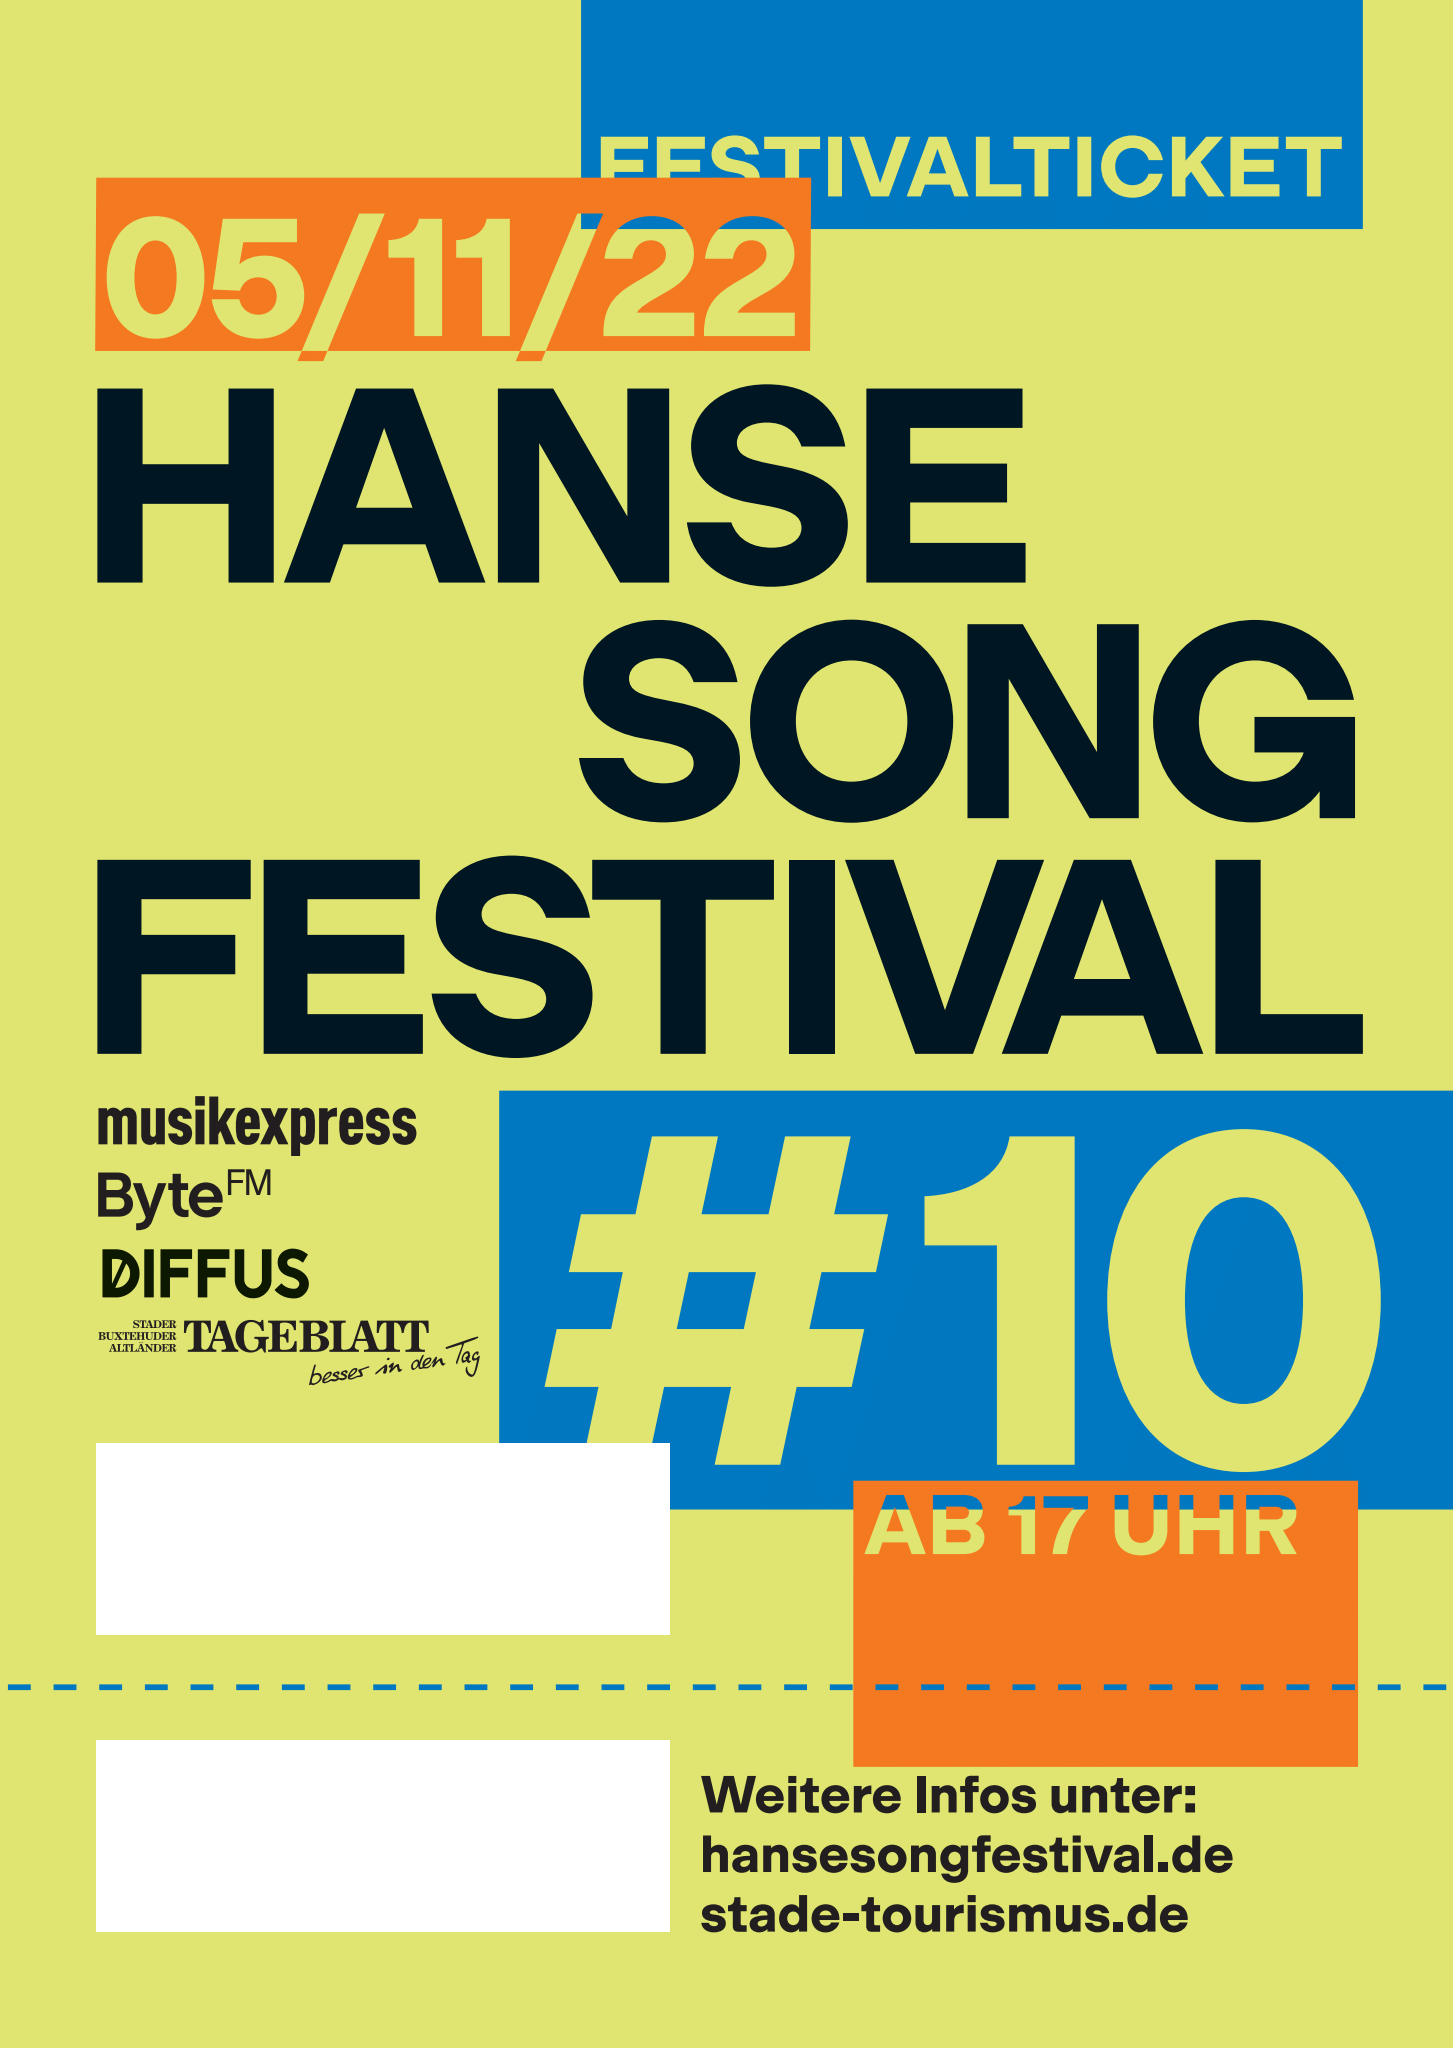 Hanse Song Festival 2022 – Festivalticket